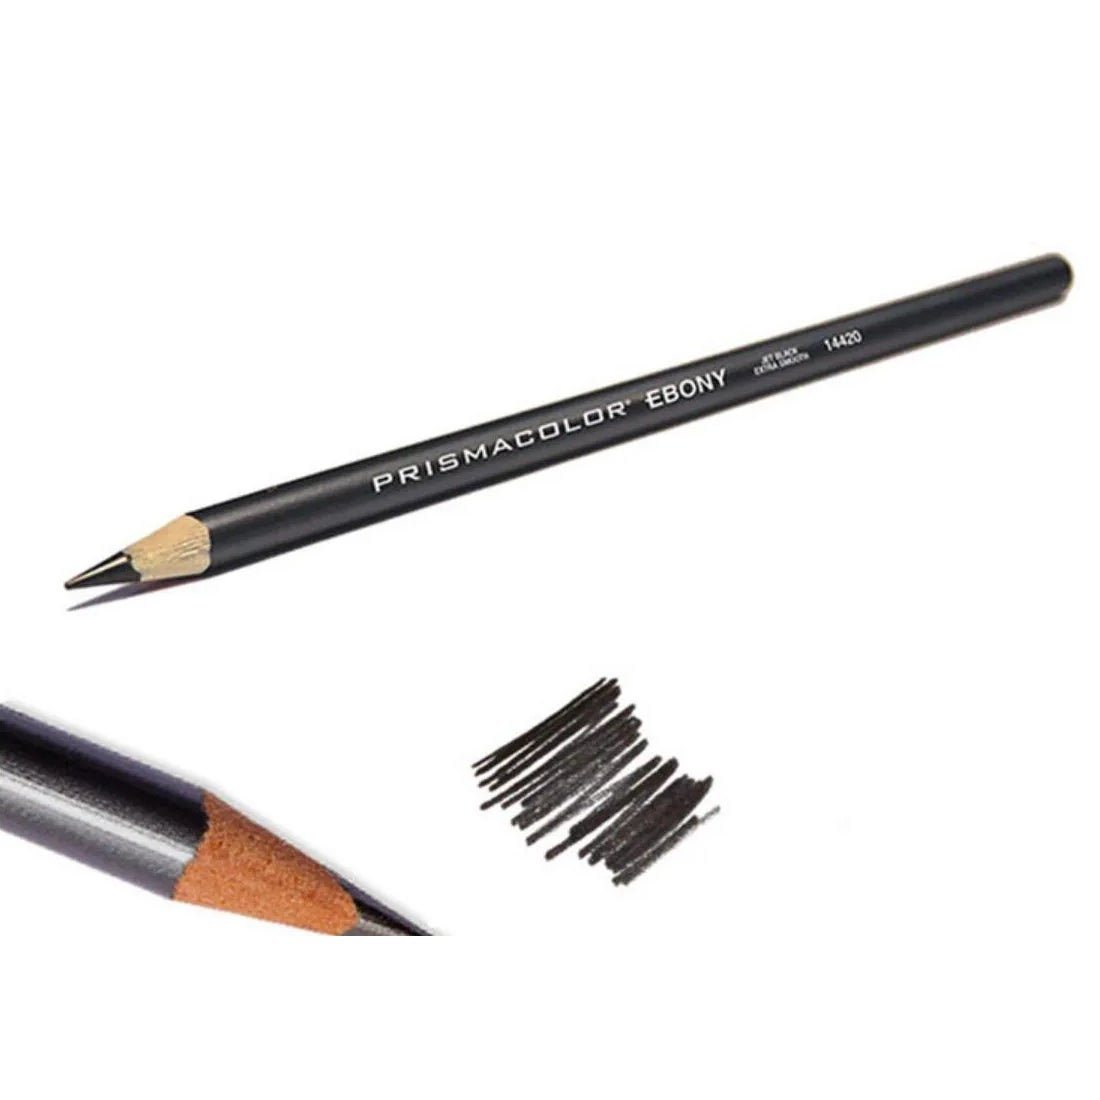 Prismacolor Ebony Graphite Drawing Pencils, Black, 2-Count